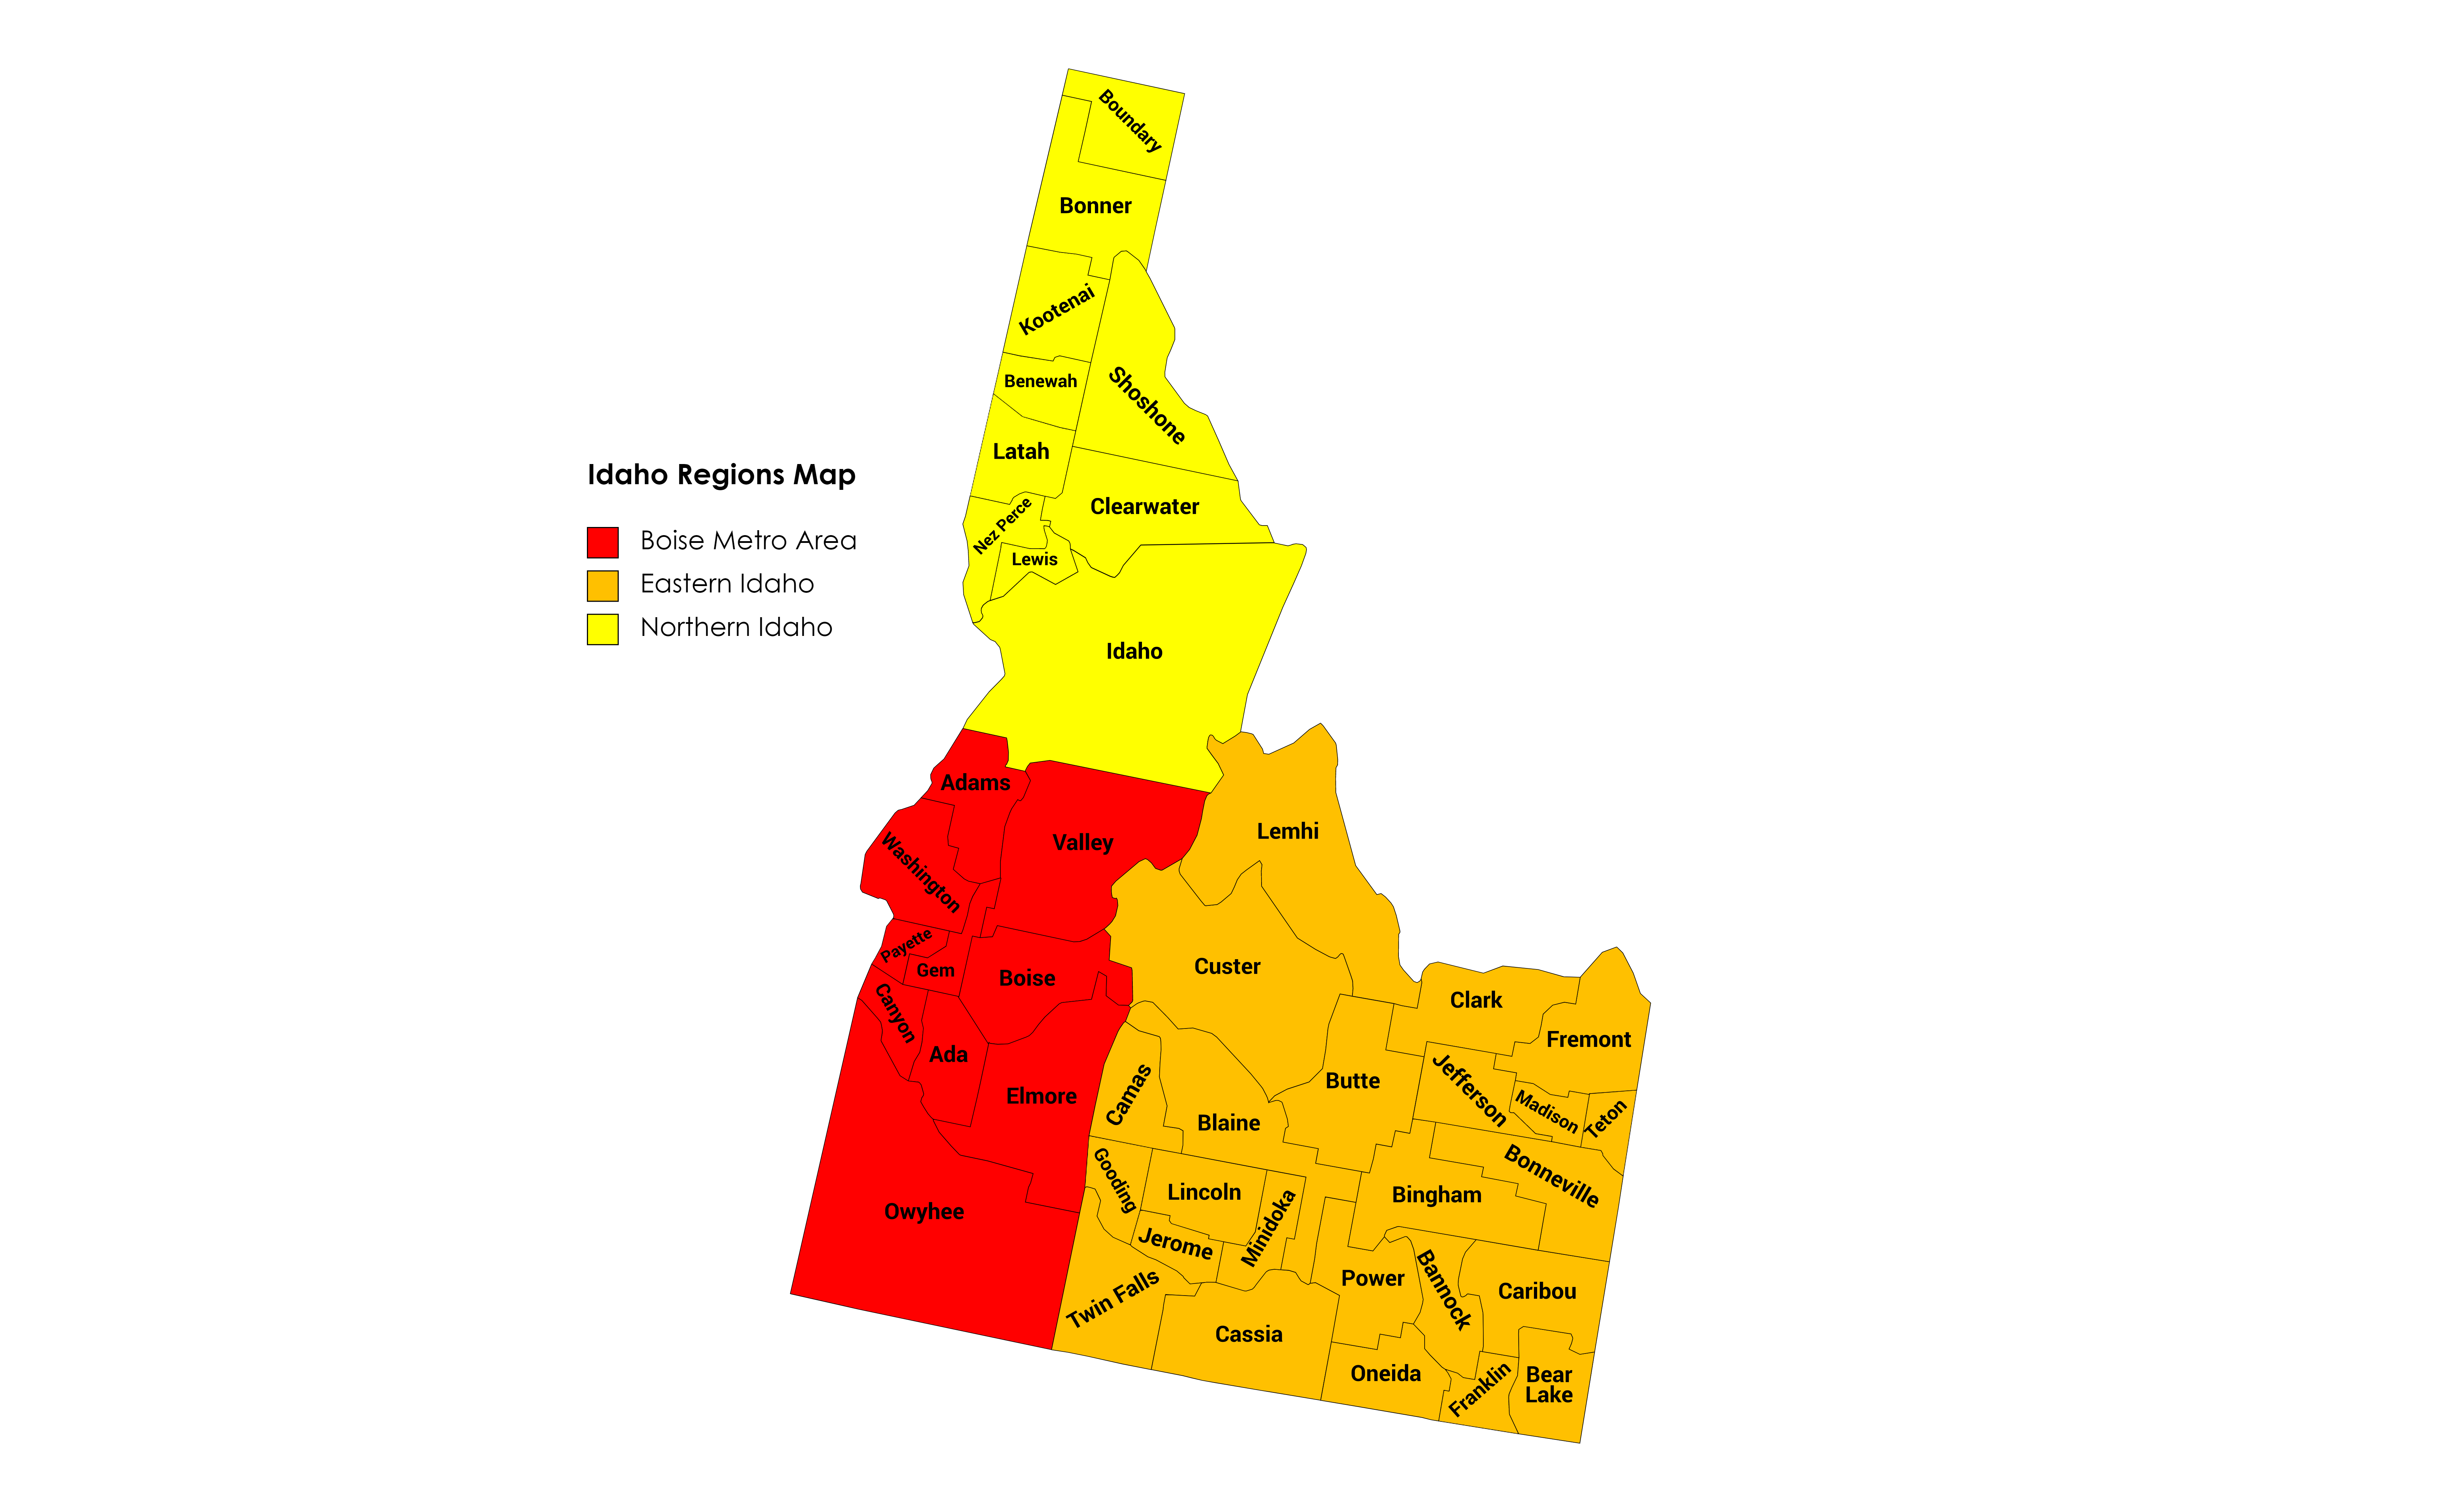 Idaho_Regions_Map